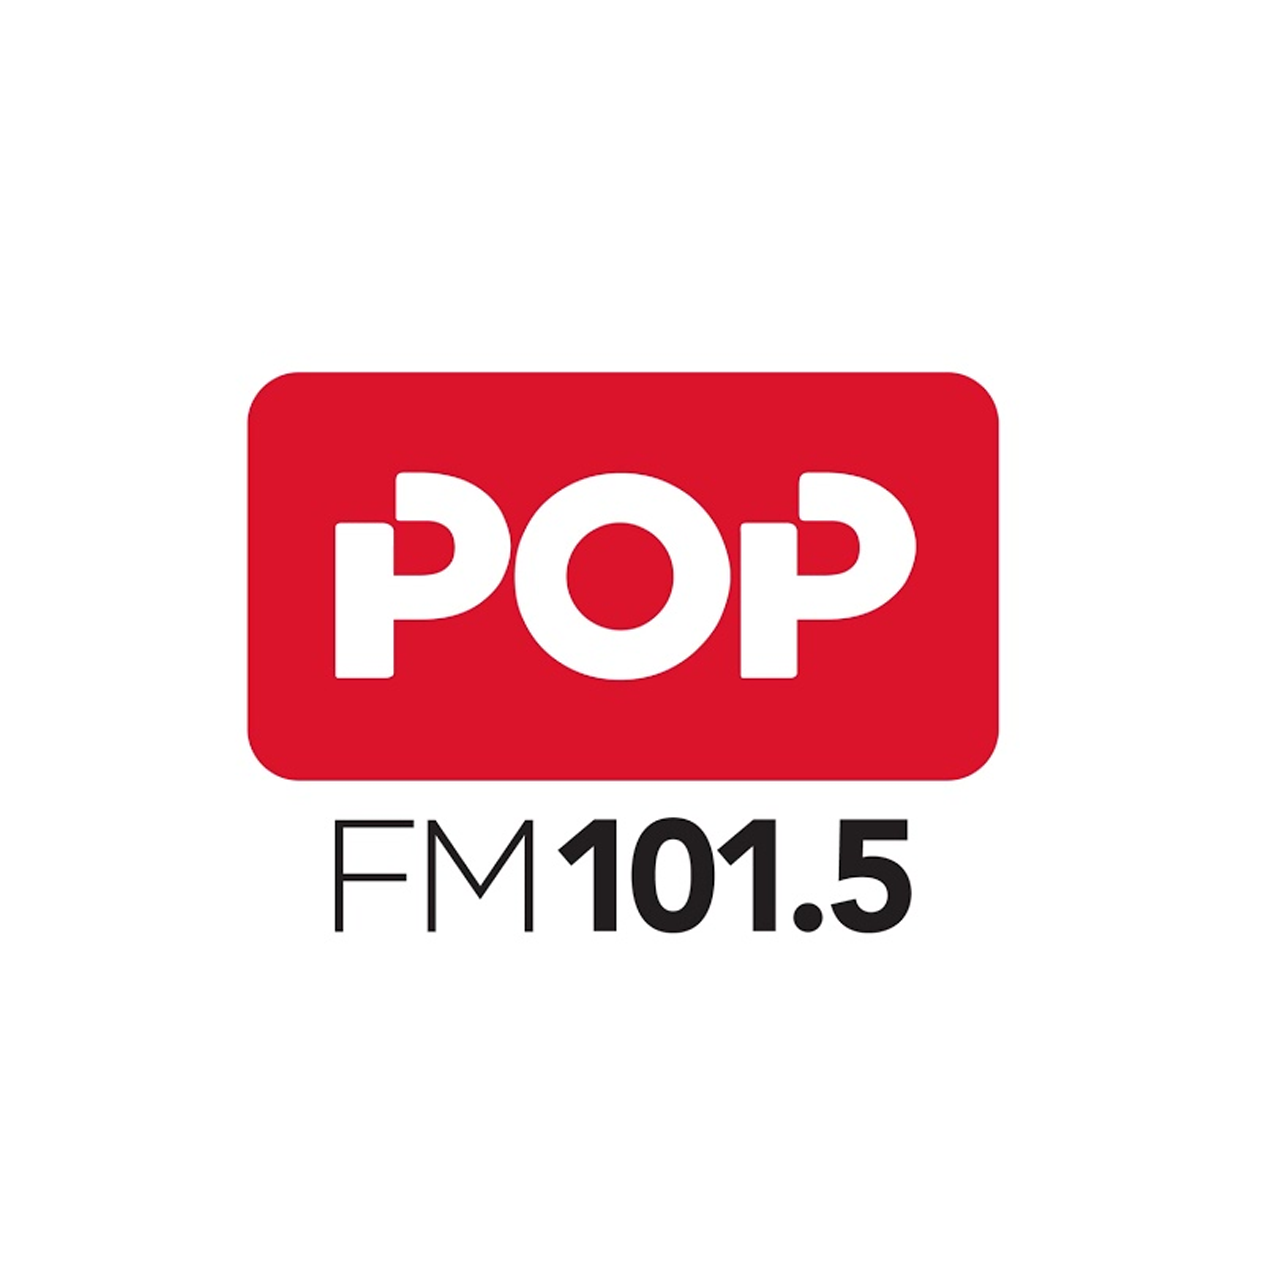 La POP - Radio